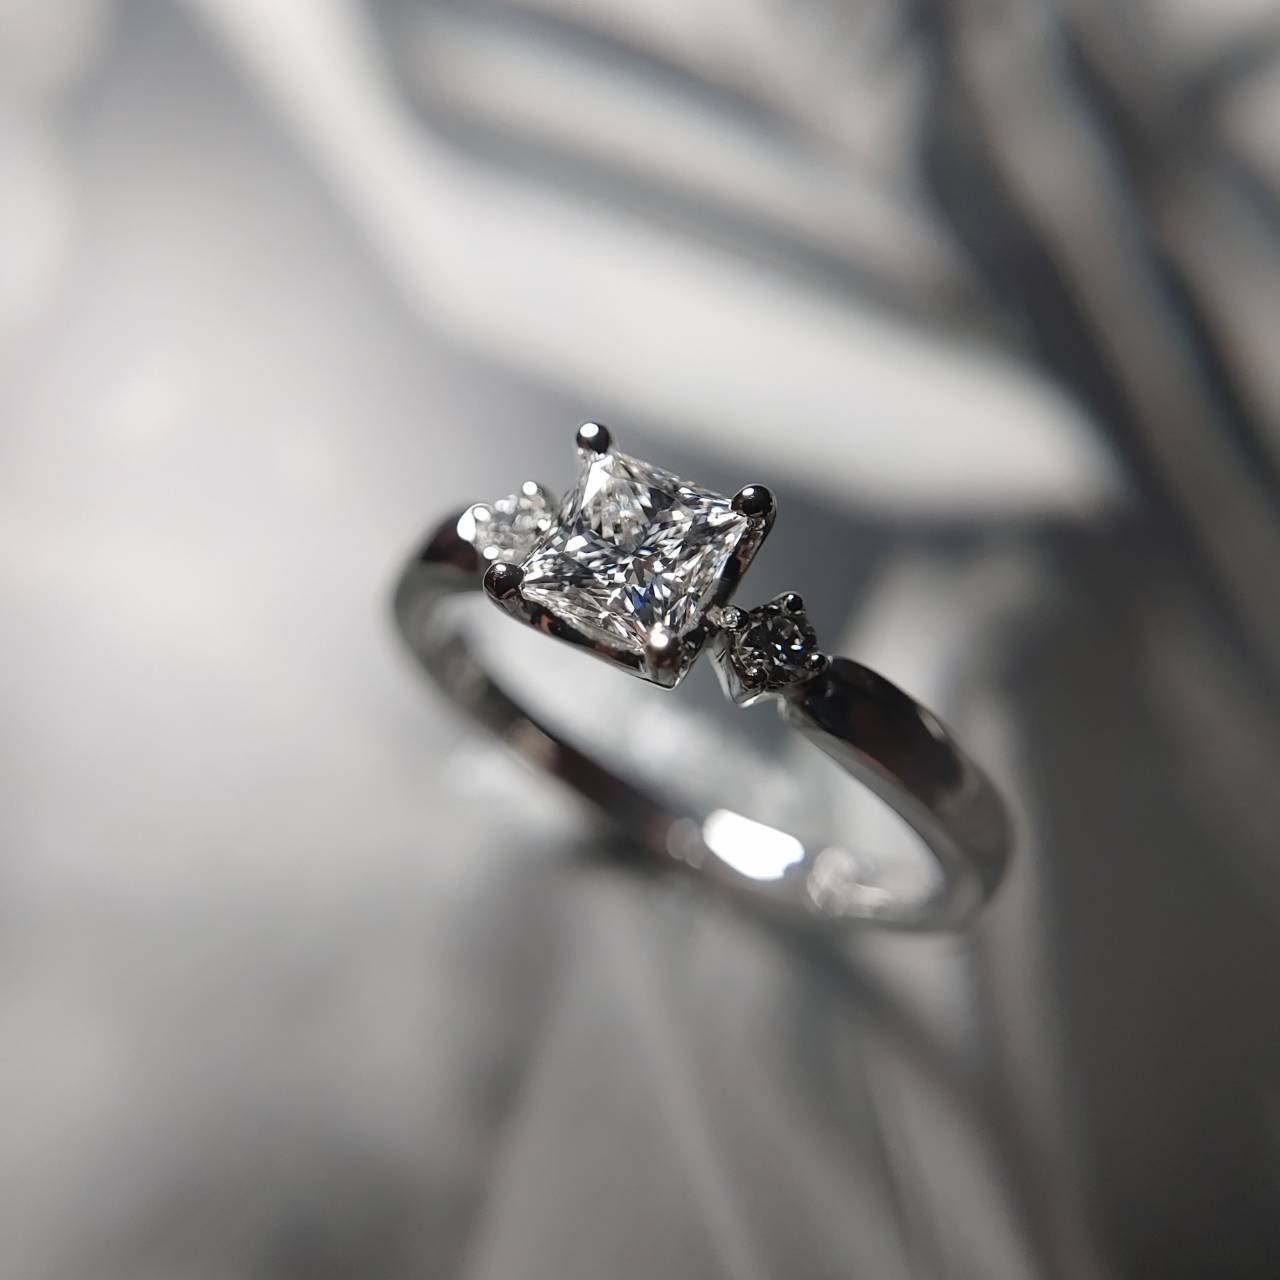 トリプルエクセレントのプリンセスカットダイヤモンドを使用した特注のプラチナ婚約指輪